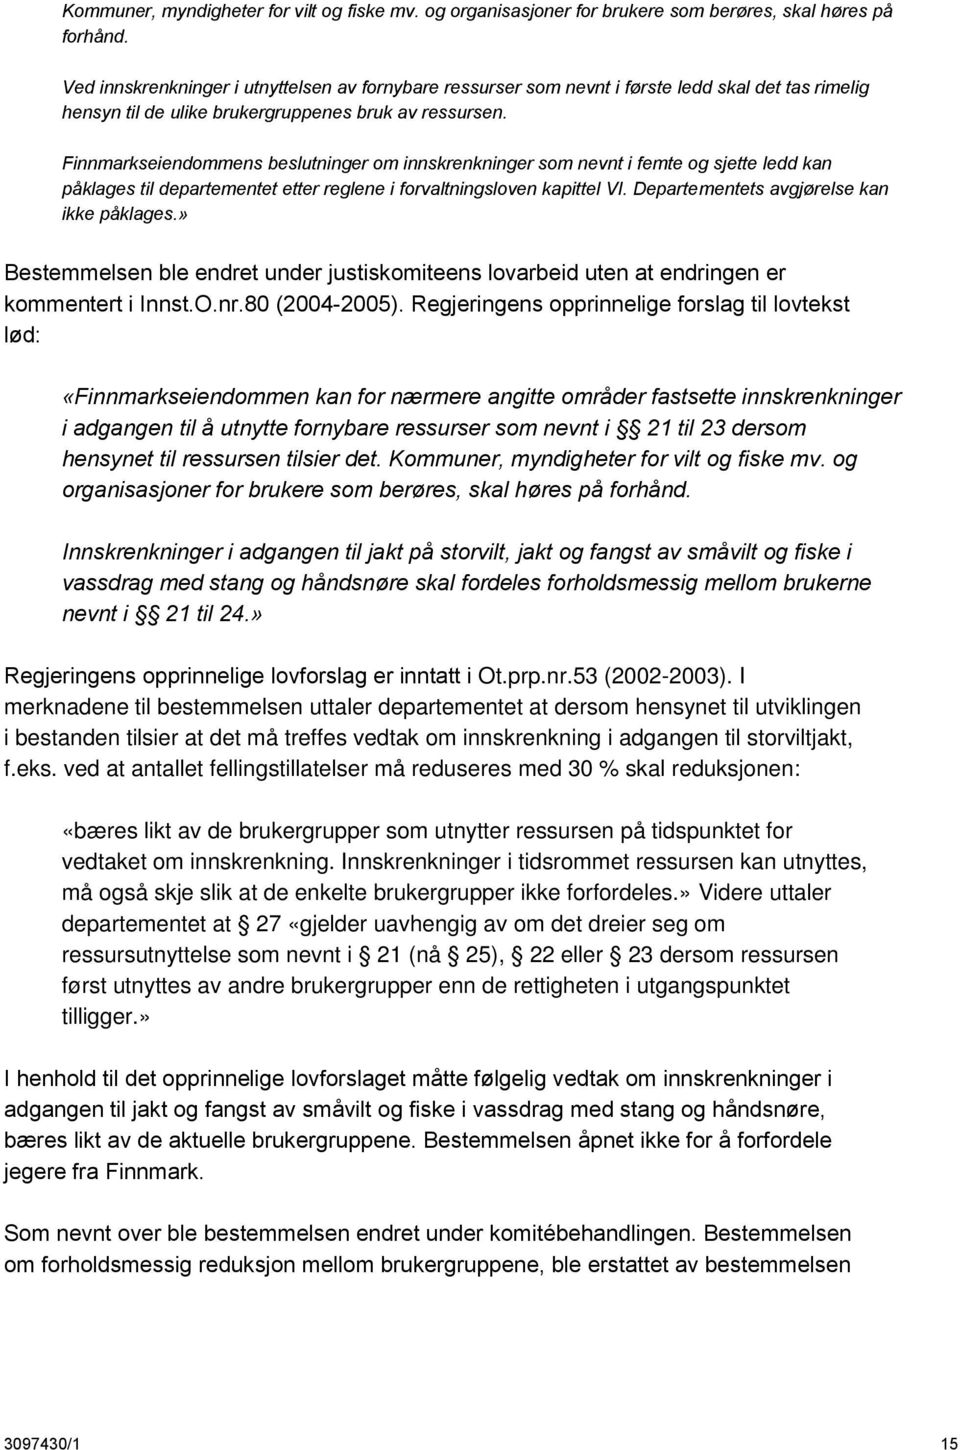 Finnmarkseiendommens beslutninger om innskrenkninger som nevnt i femte og sjette ledd kan påklages til departementet etter reglene i forvaltningsloven kapittel VI.